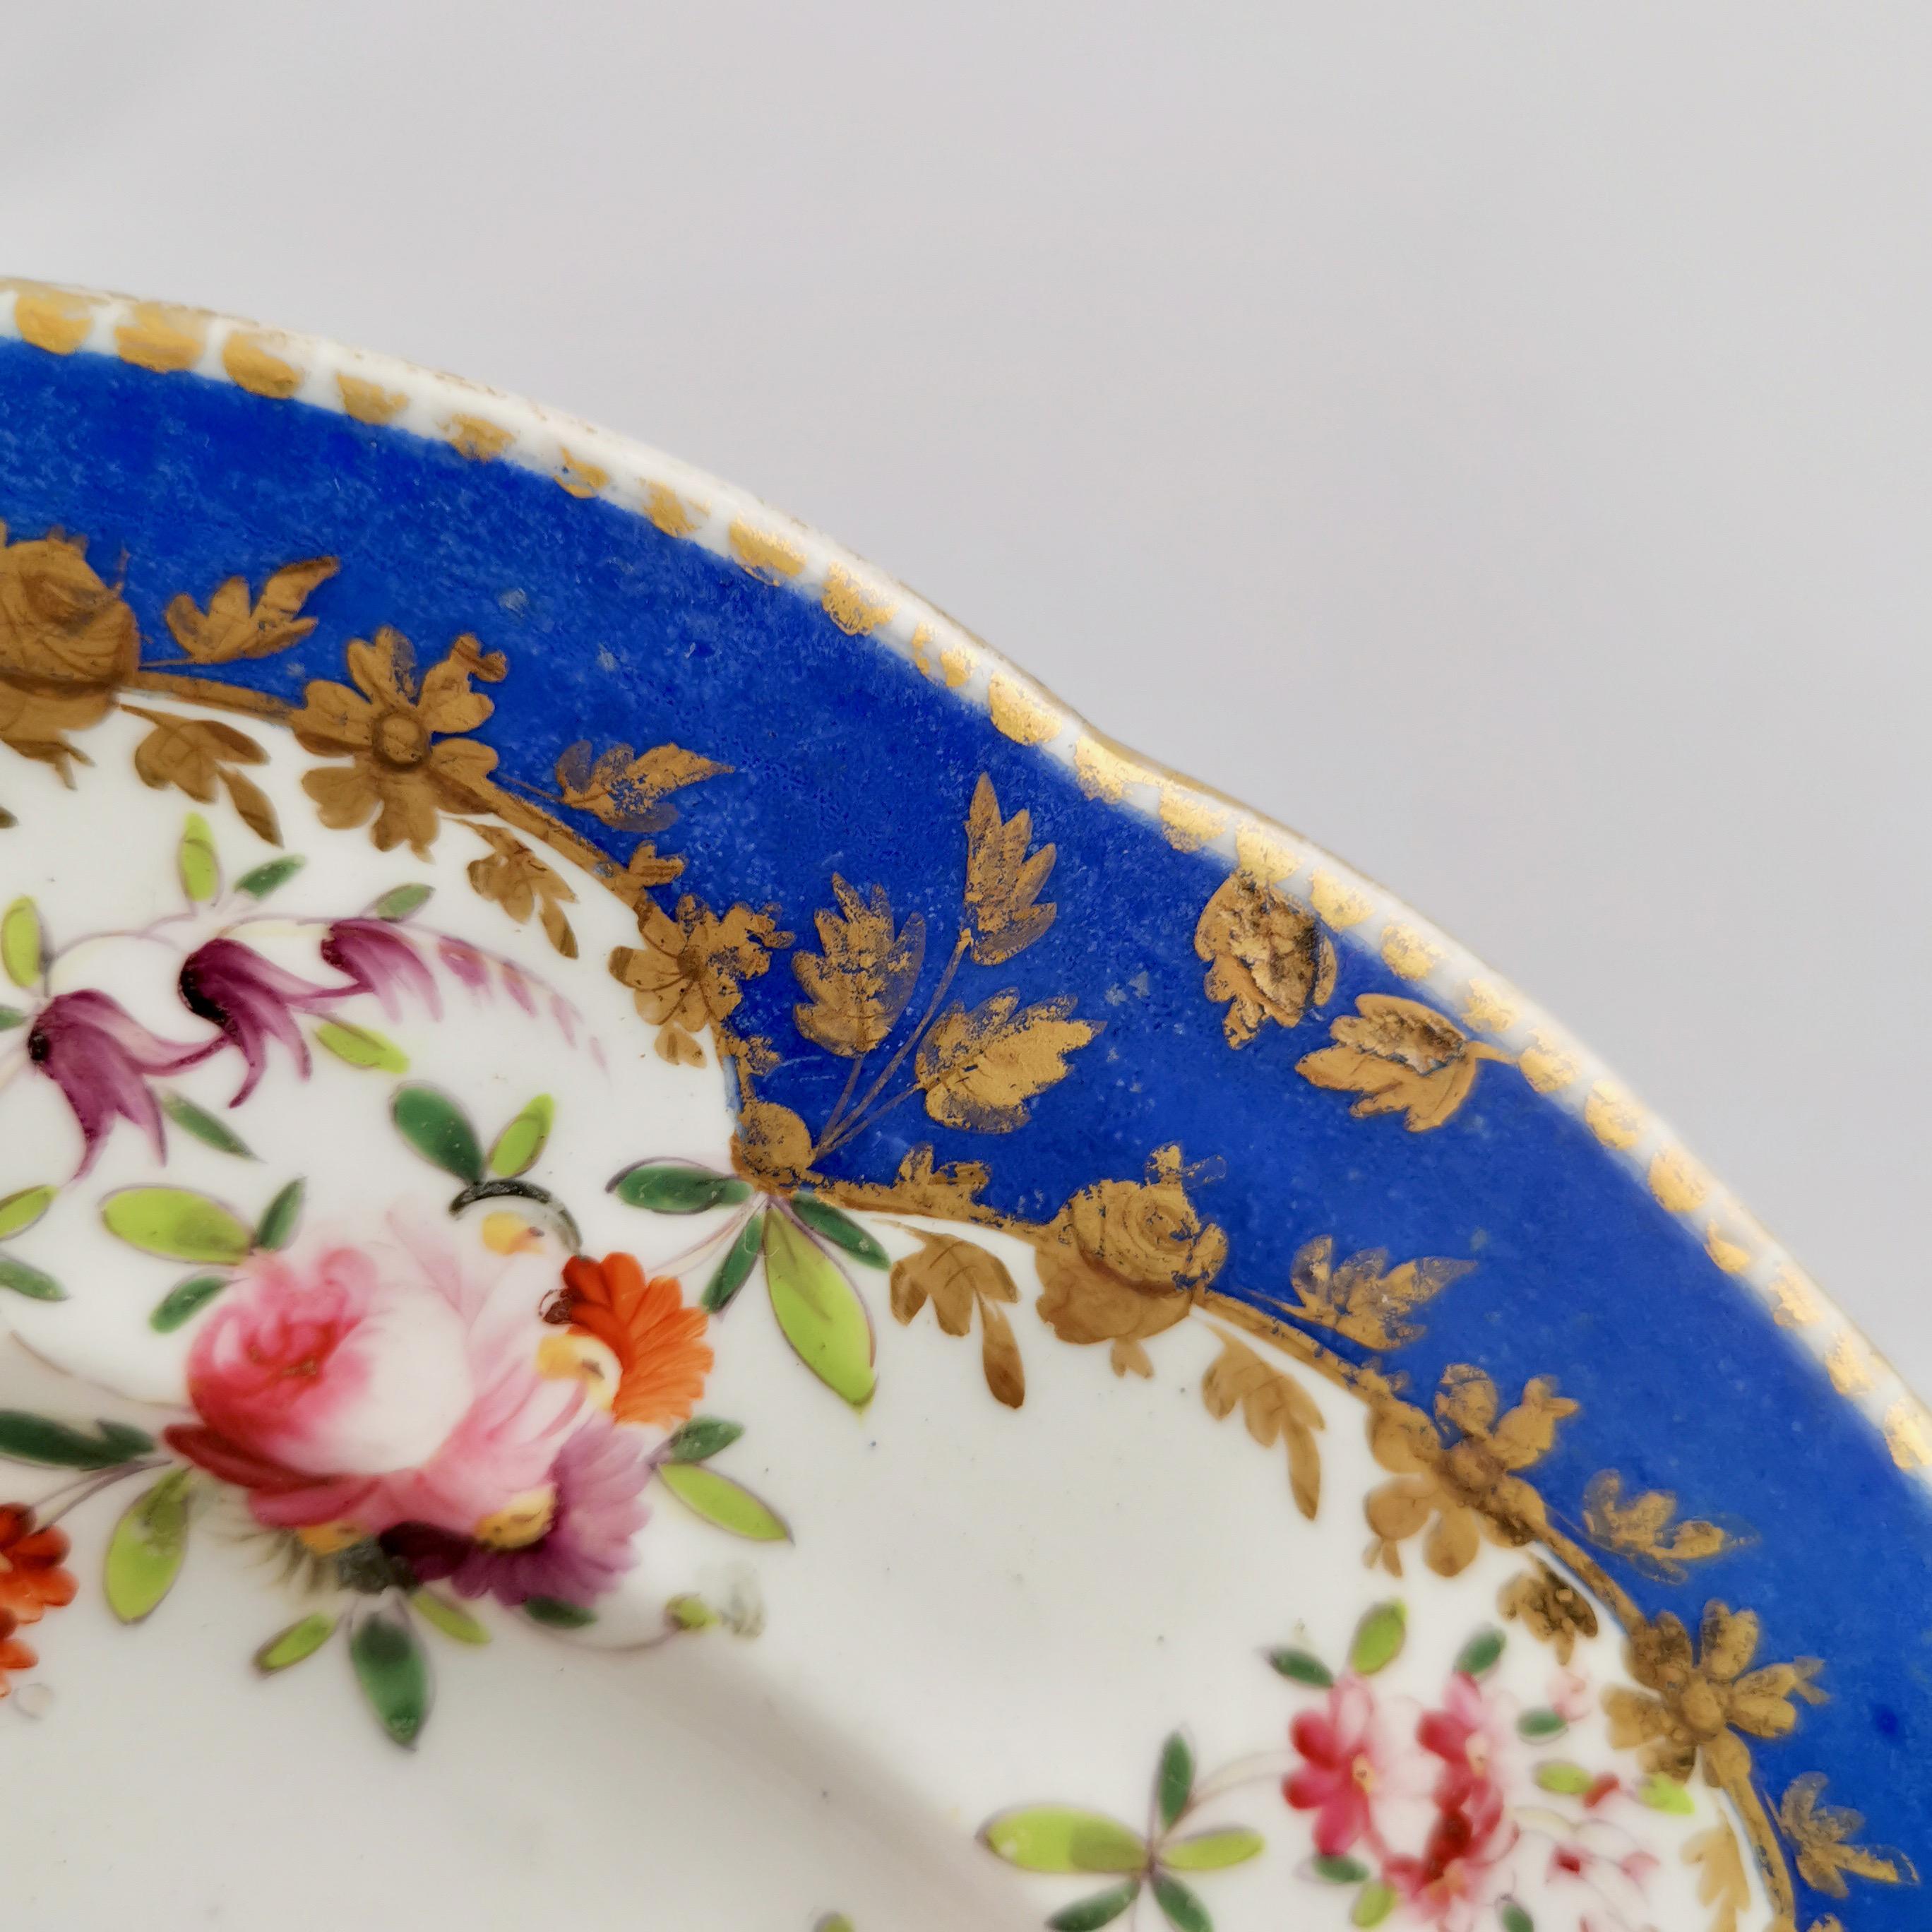 Coalport Porcelain Plate, Royal Blue with Flower Garlands, 1820-1825 3